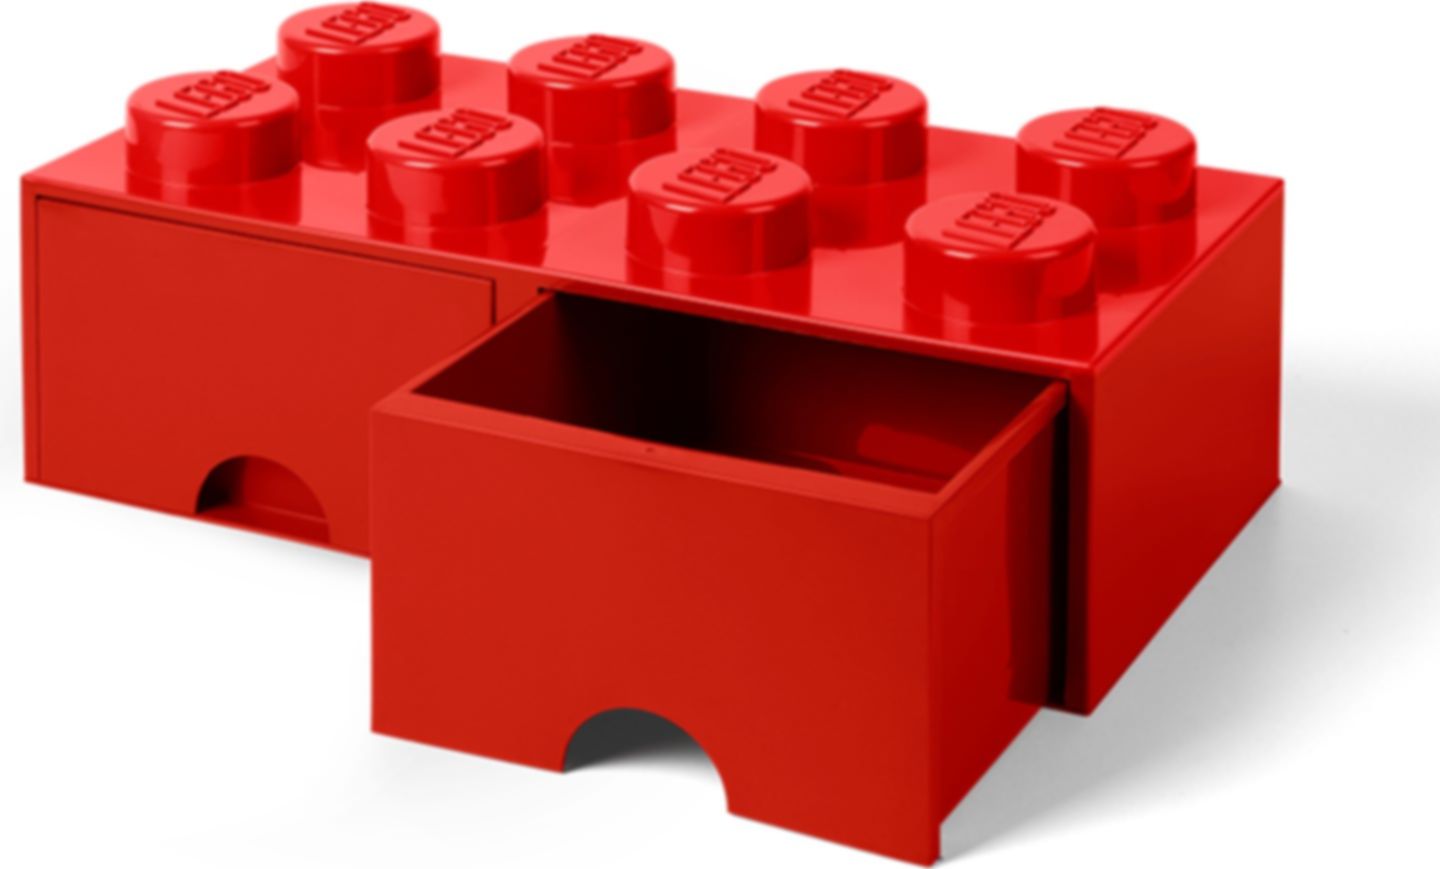 8-stud Bright Red Storage Brick Drawer komponenten